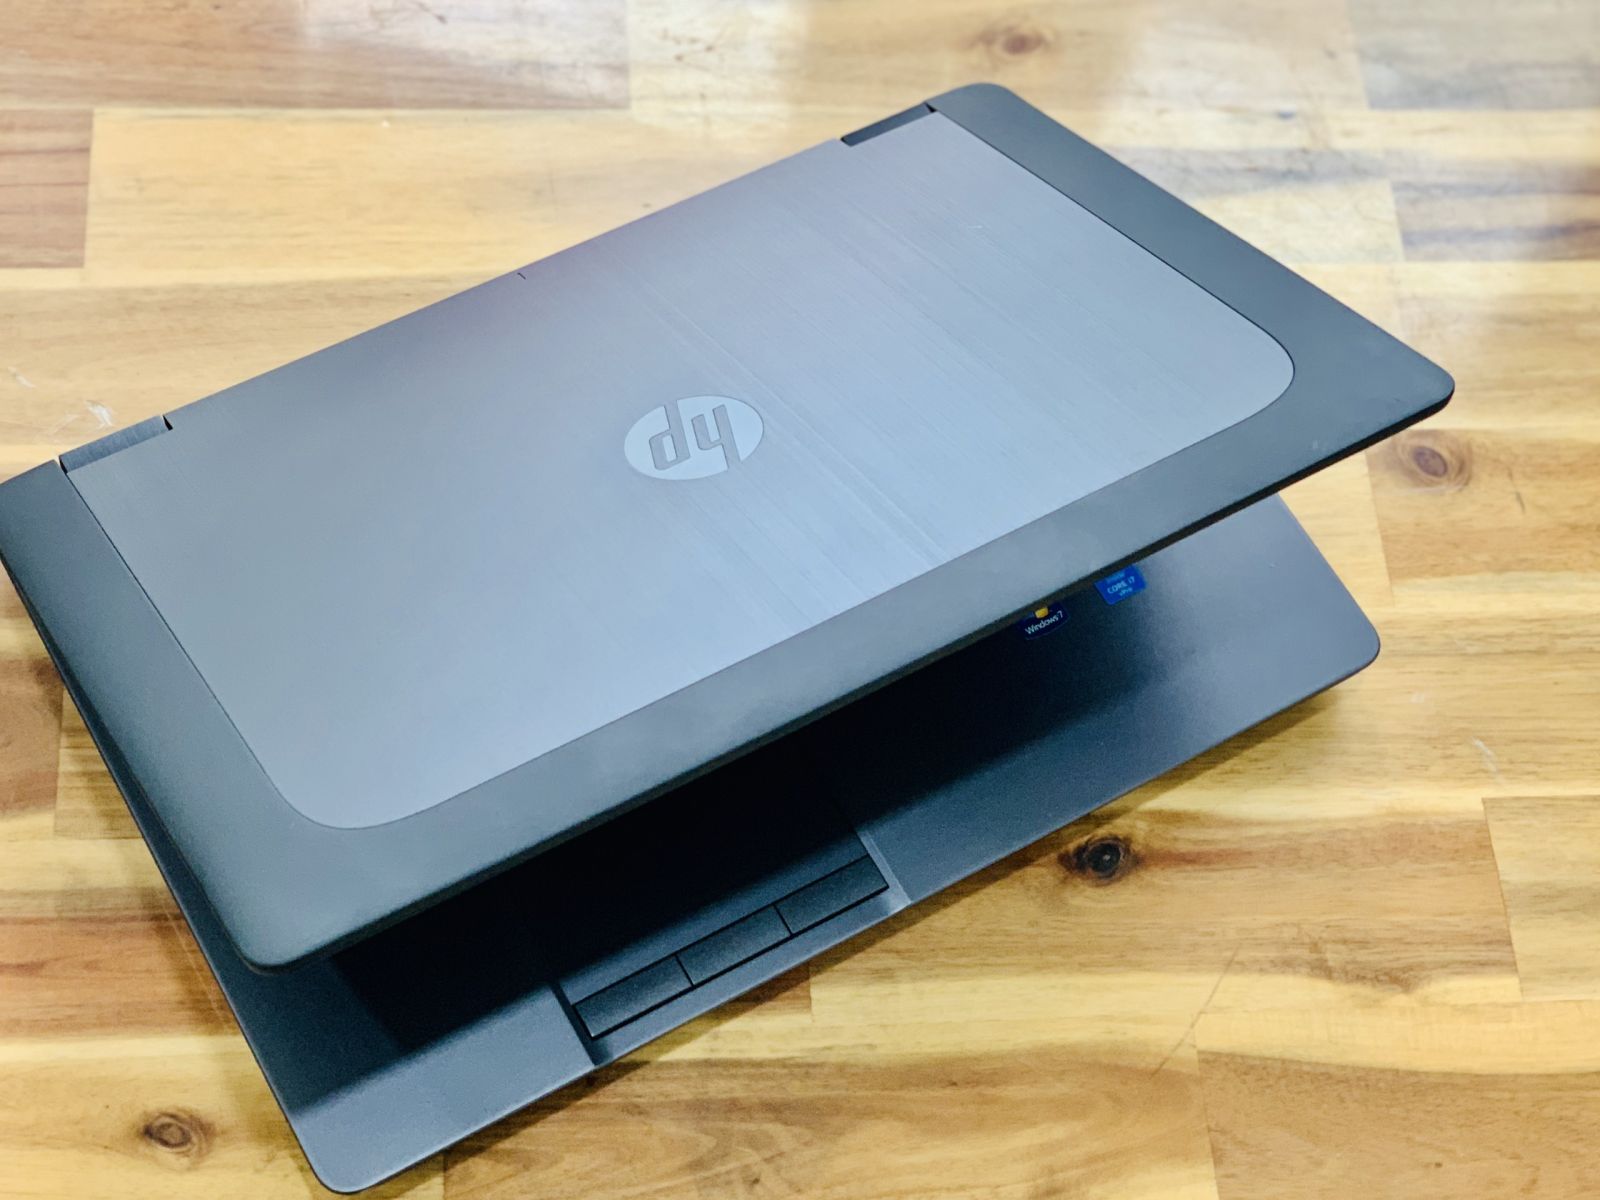 Hình ảnh HP Zbook 17 i7 Giá rẻ của Laptop Minh Mẫn